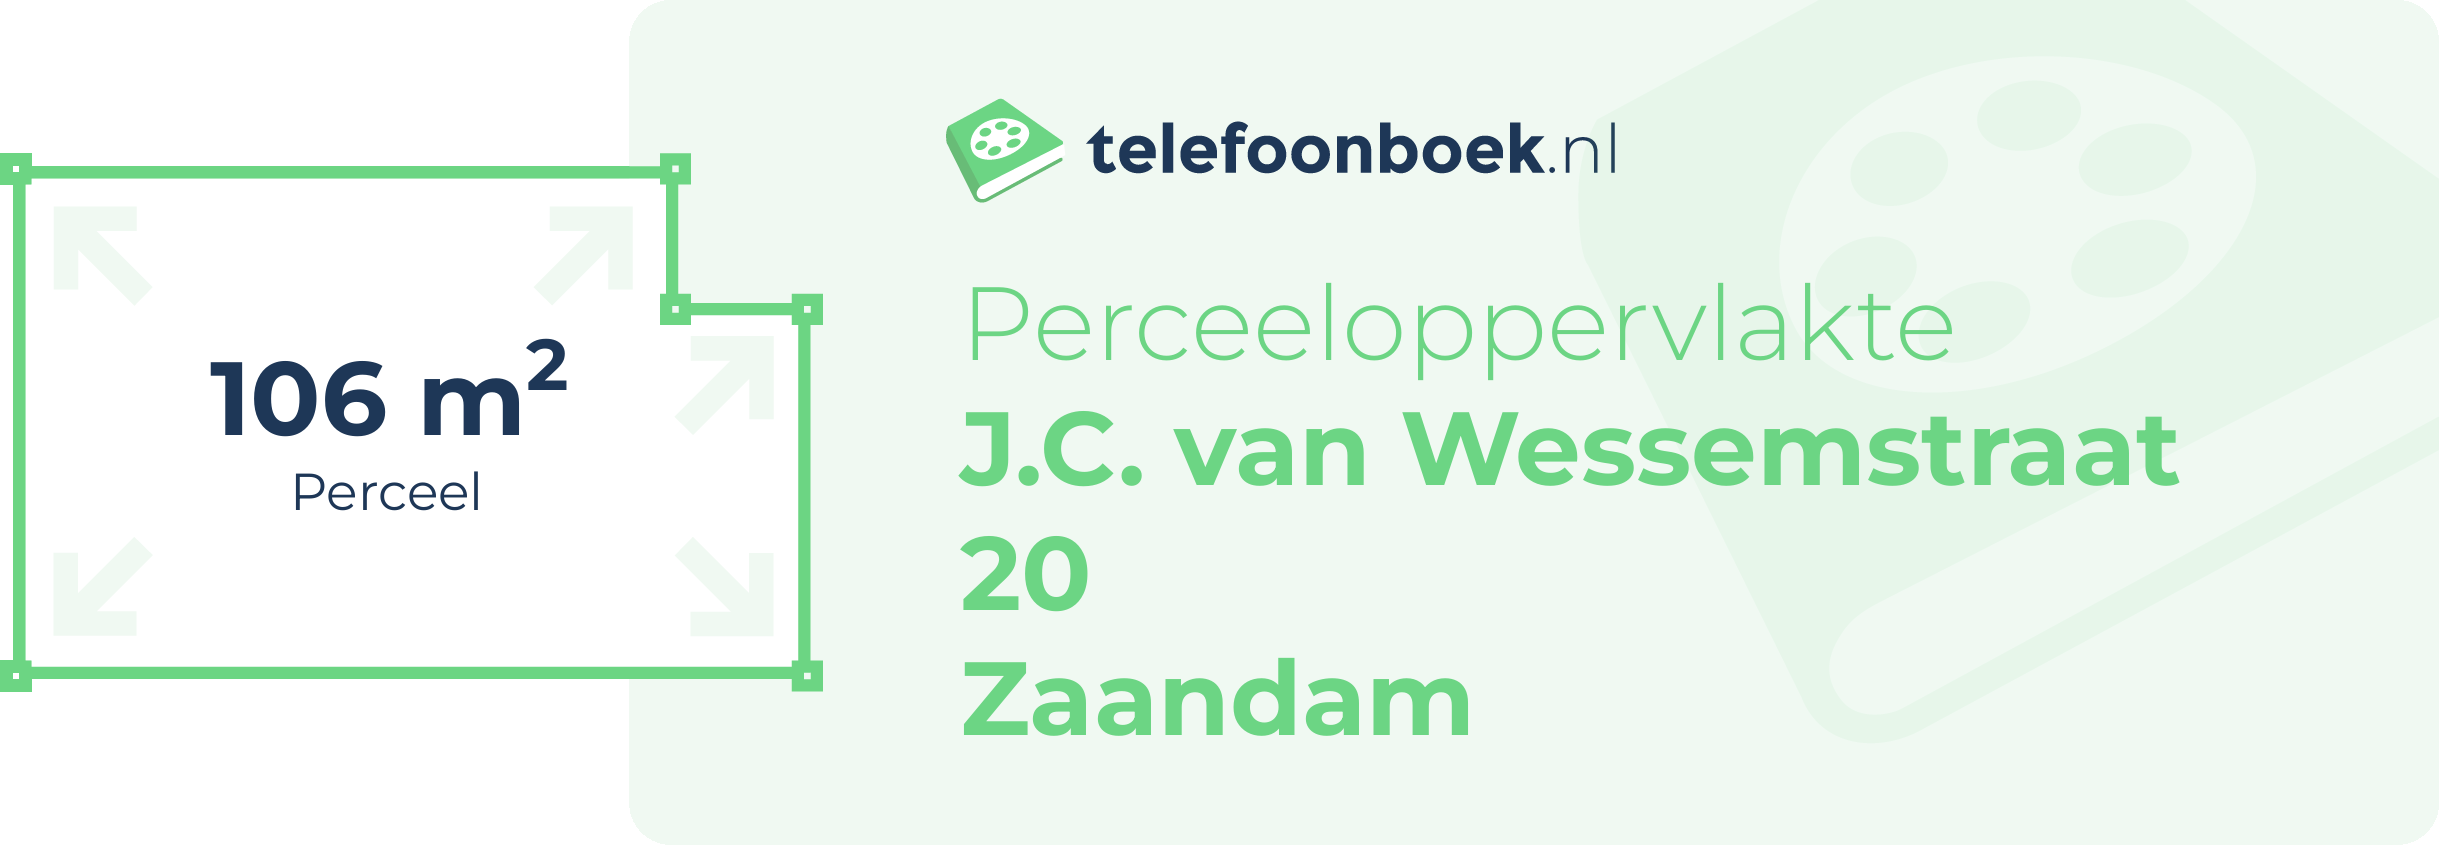 Perceeloppervlakte J.C. Van Wessemstraat 20 Zaandam